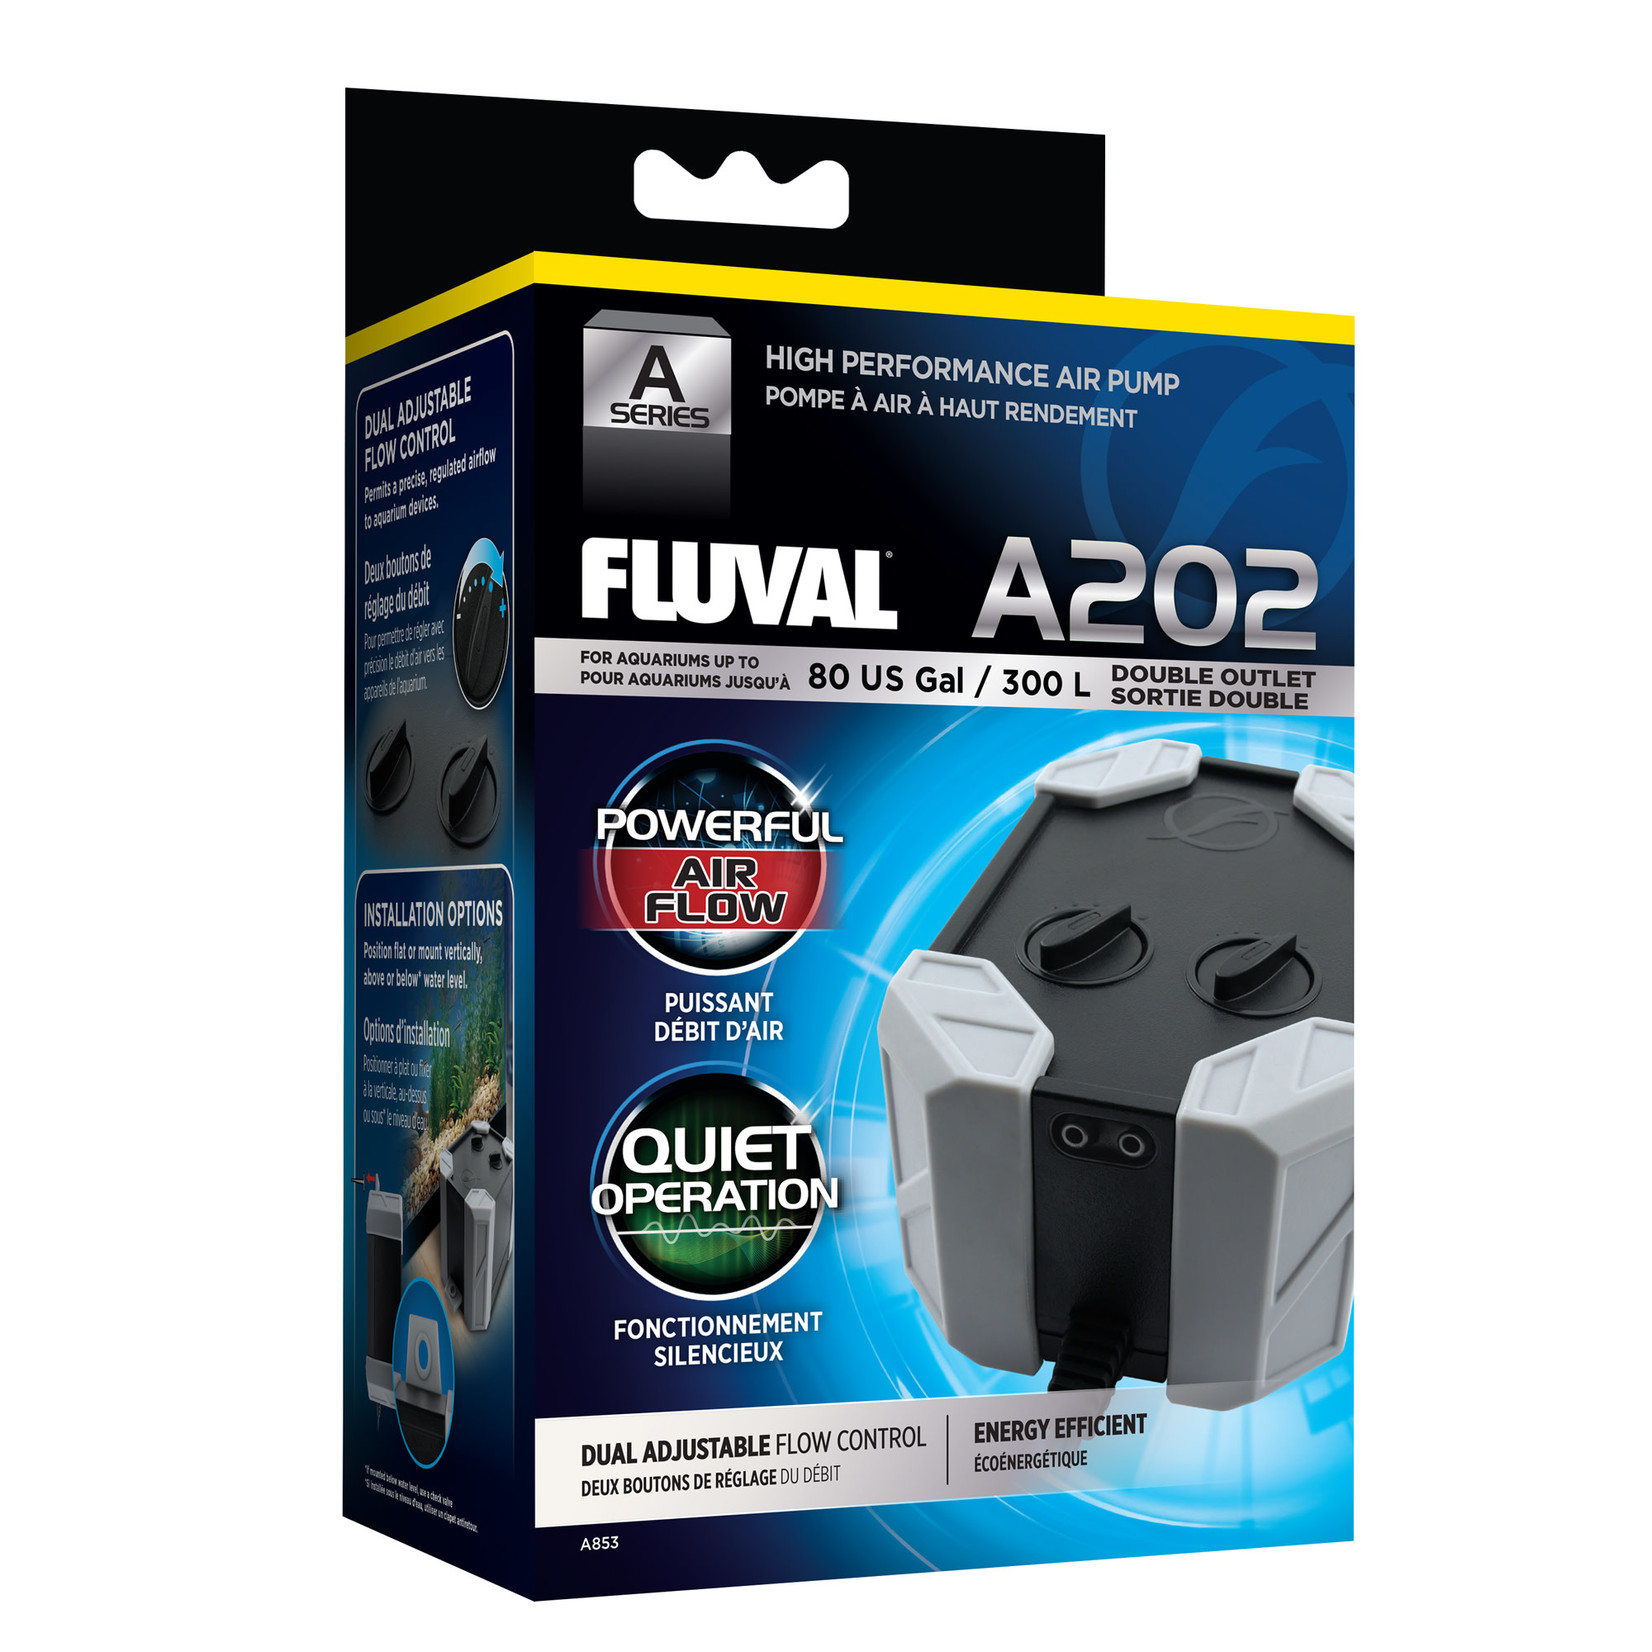 FLUVAL Fluval A202 Air Pump